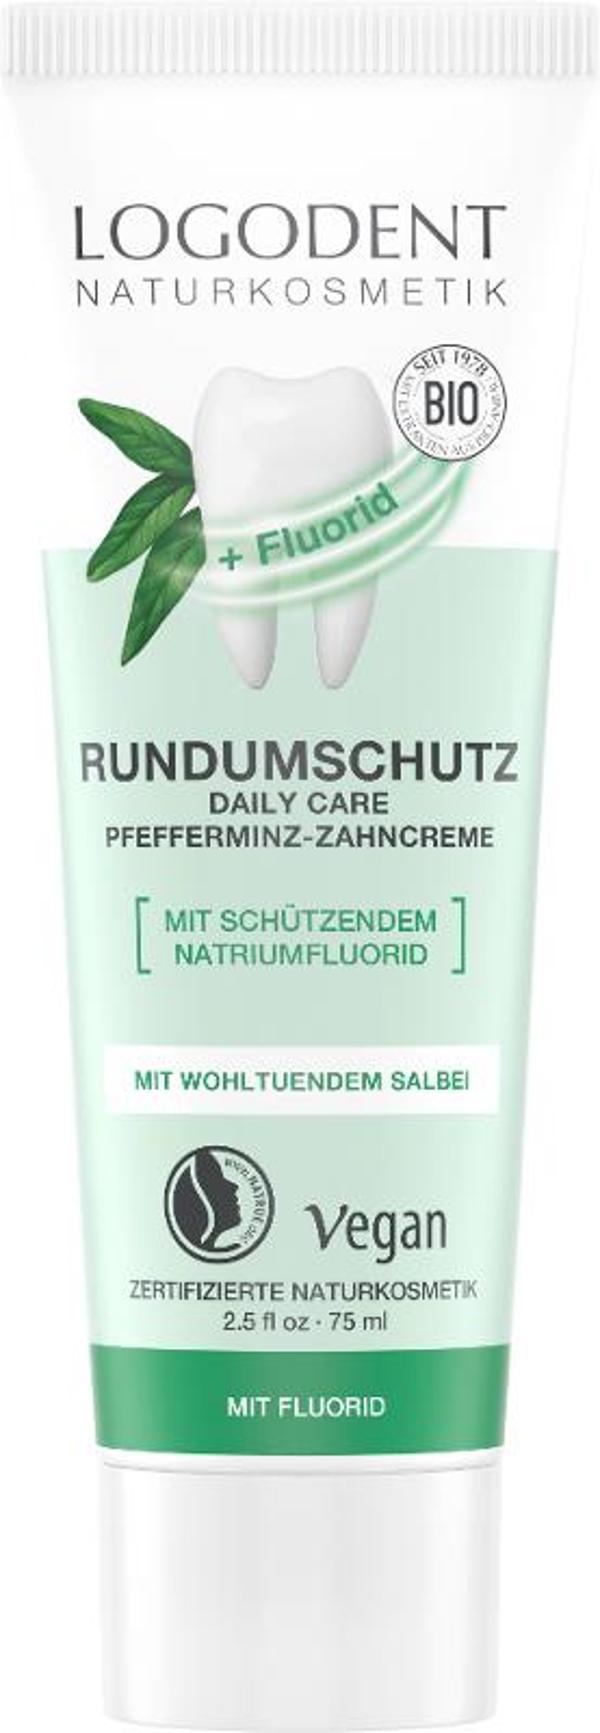 Produktfoto zu Rundumschutz Pfefferminz-Zahncreme, 75 ml